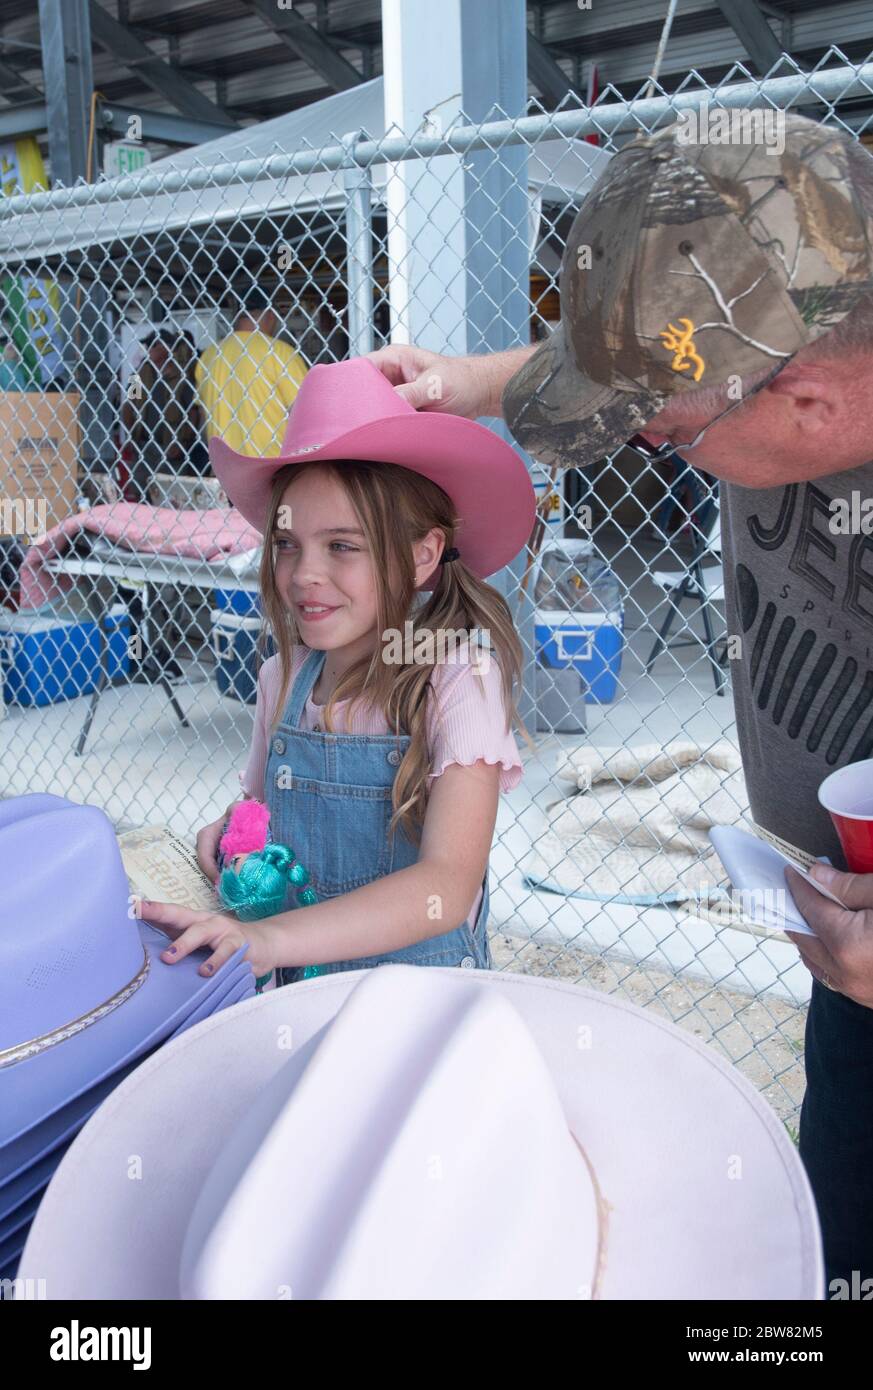 Jeff Leedy posiziona un cappello sulla testa di sua figlia Chandler ferri prima del rodeo. Foto Stock